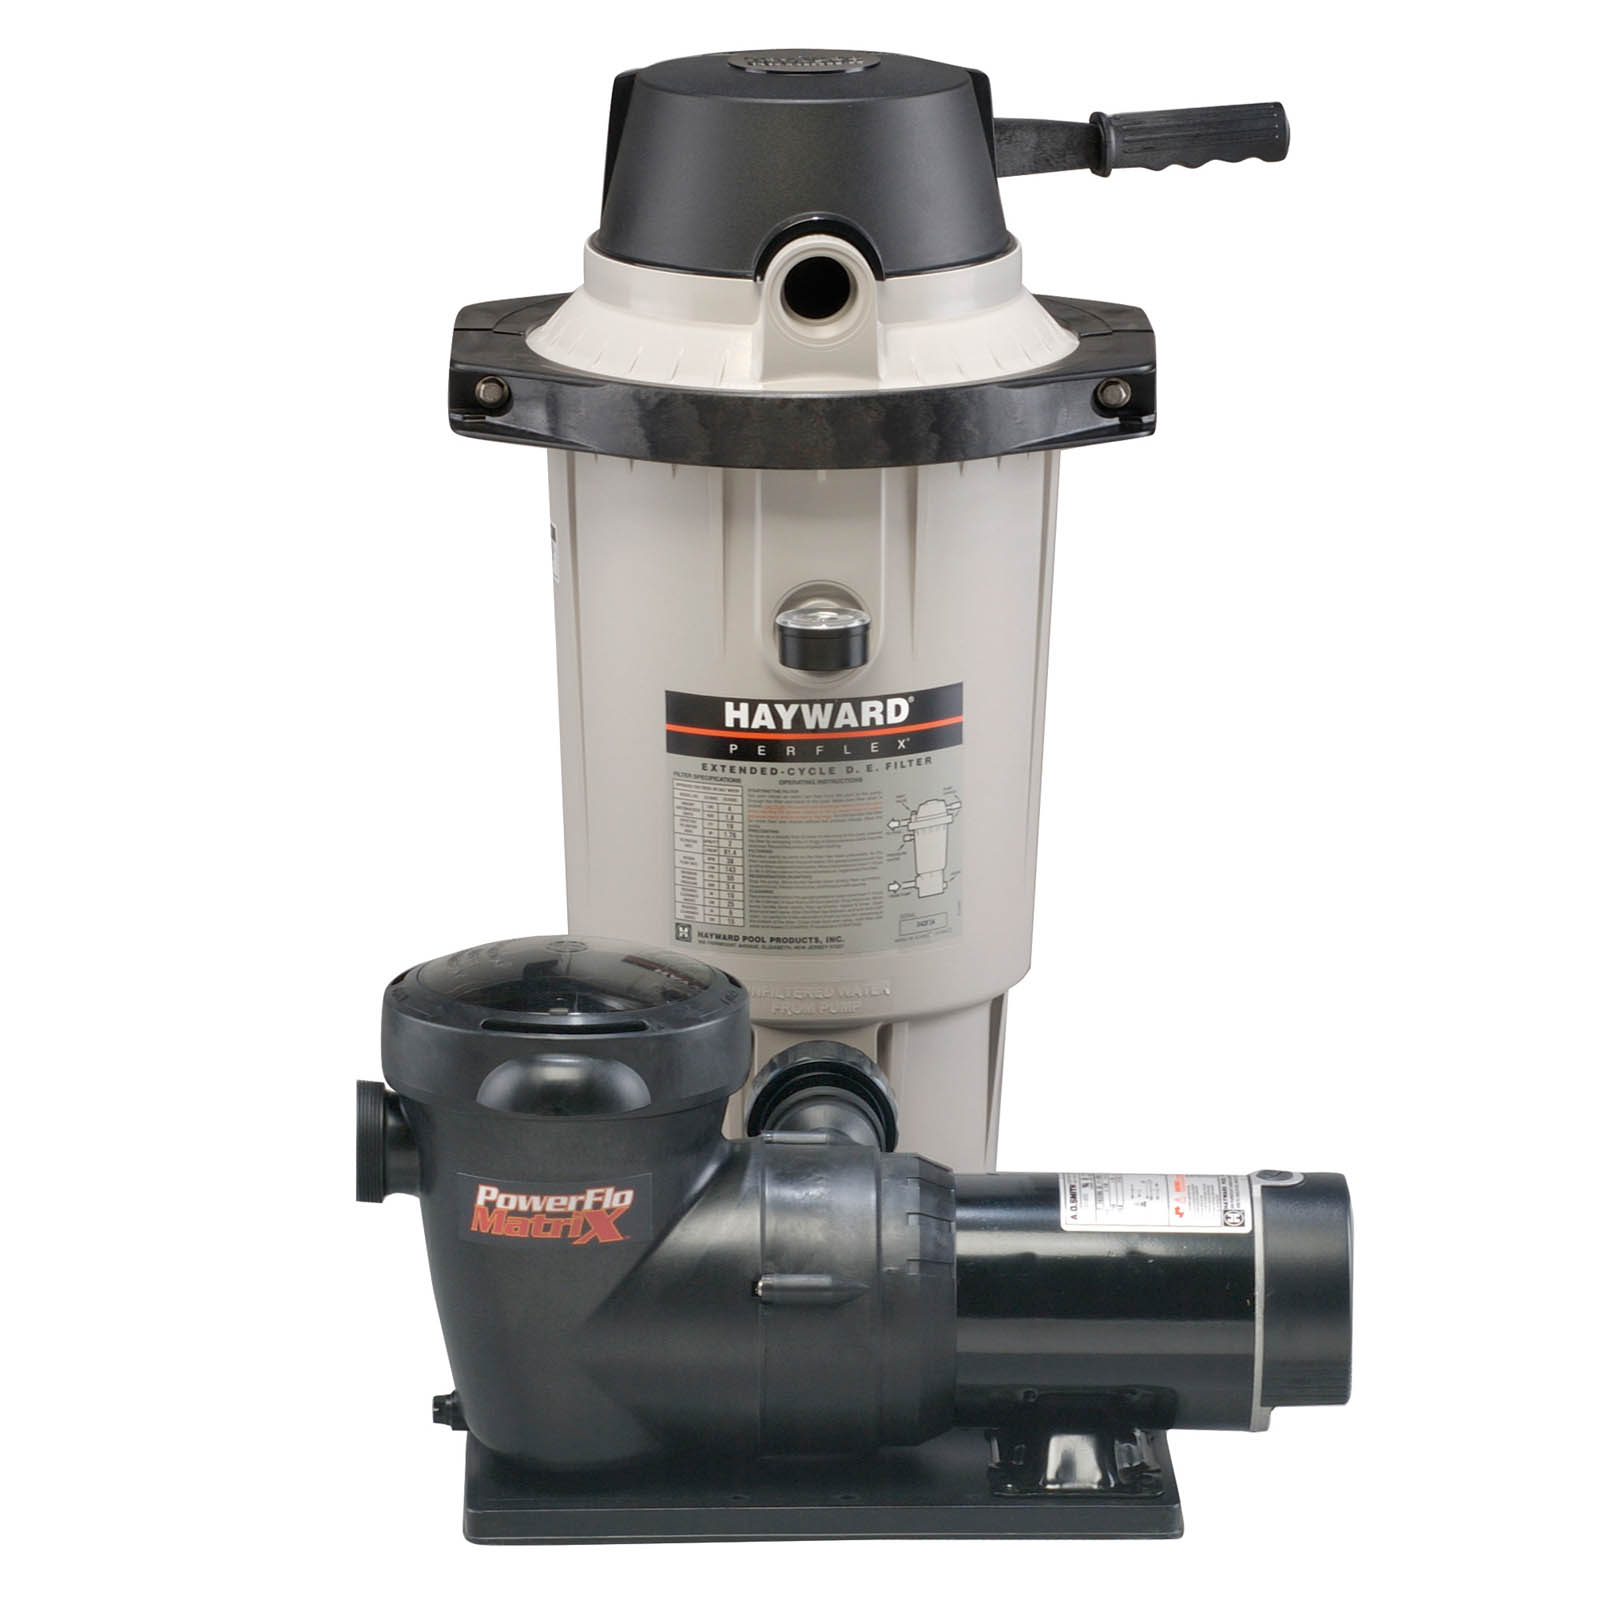 Hayward DE Filter System with 1 1/2 hp pump (EC50)